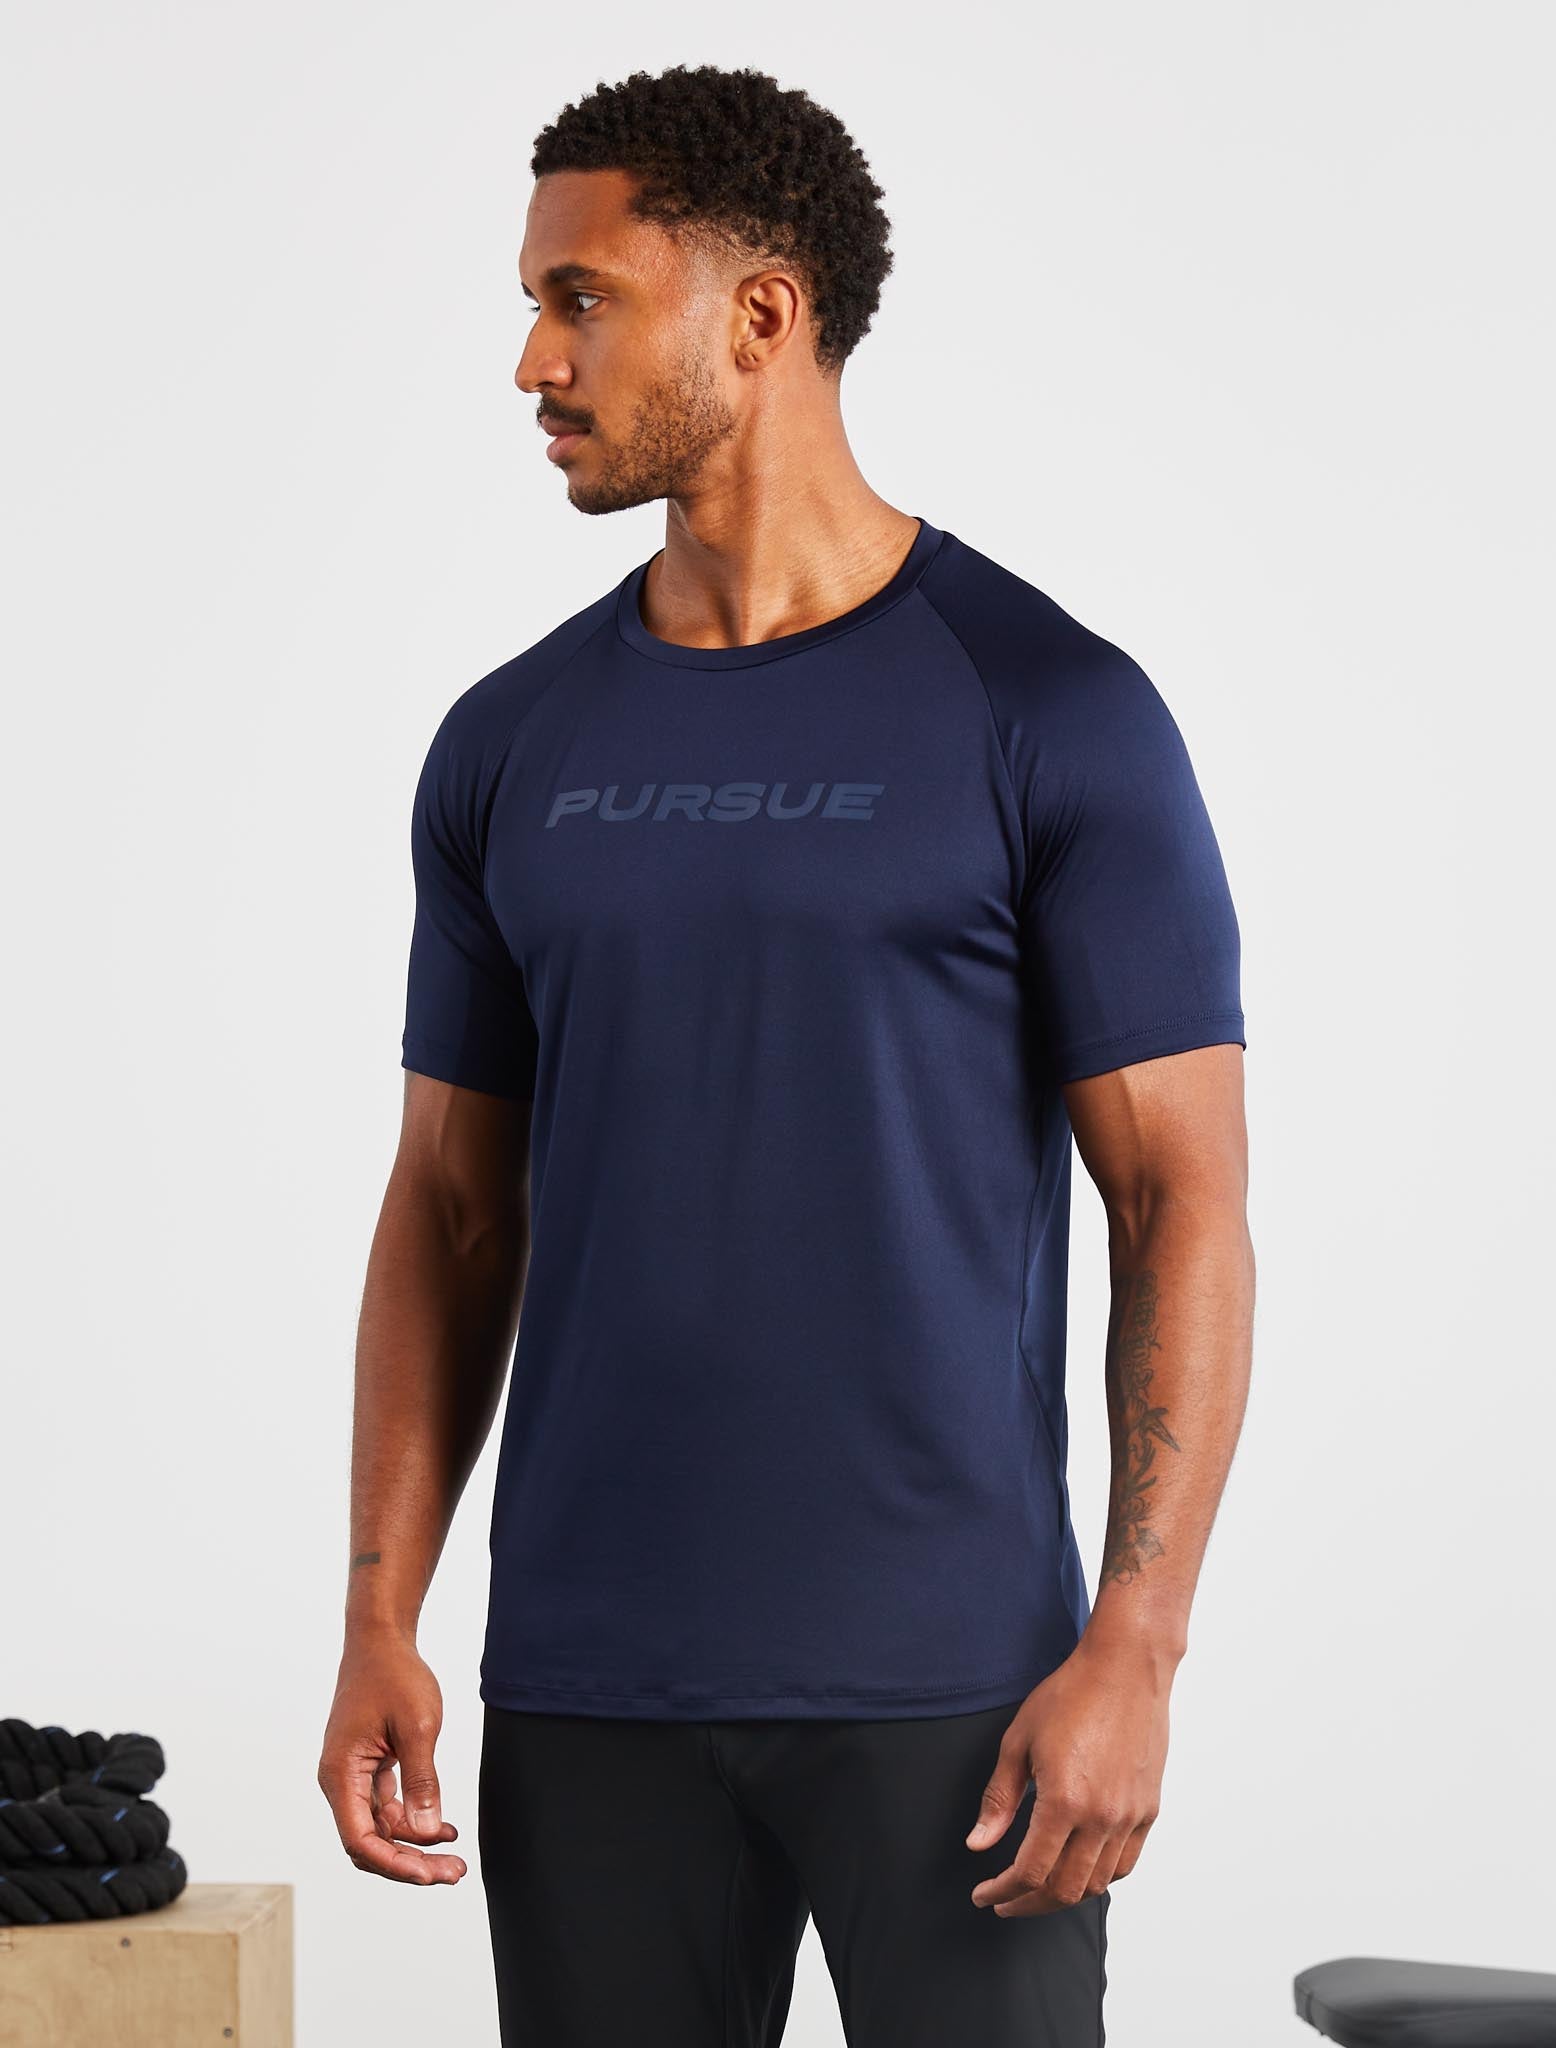 Statement T-Shirt / Navy Pursue Fitness 1